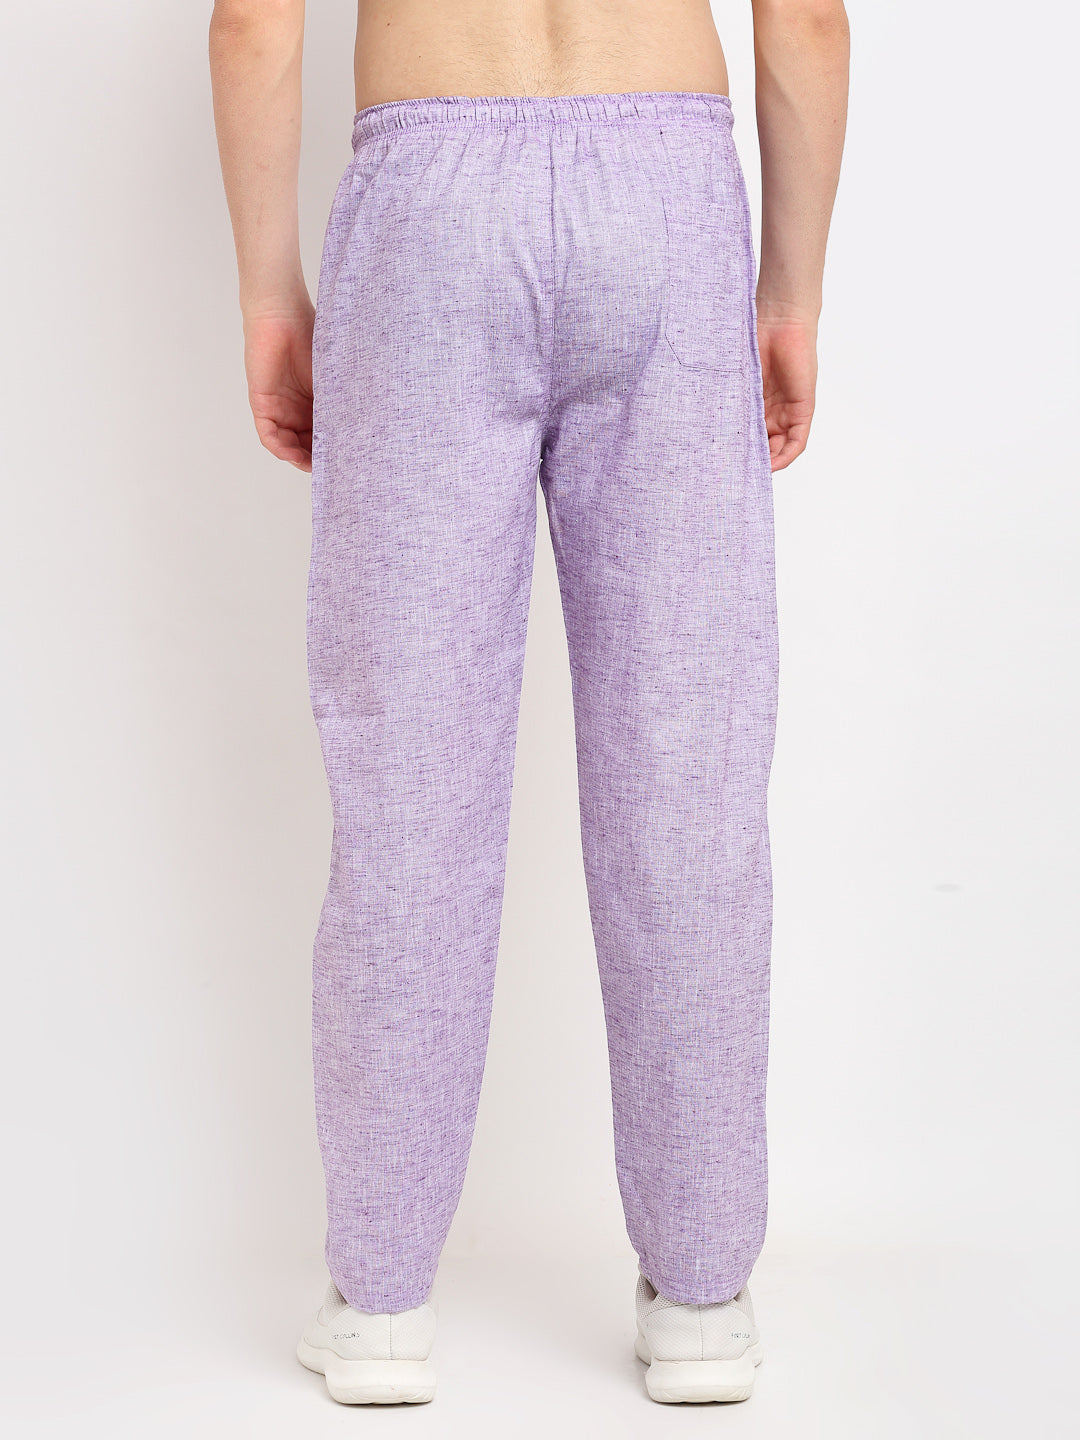 Jainish Men's Purple Linen Cotton Track Pants ( JOG 021Purple ) - Distacart